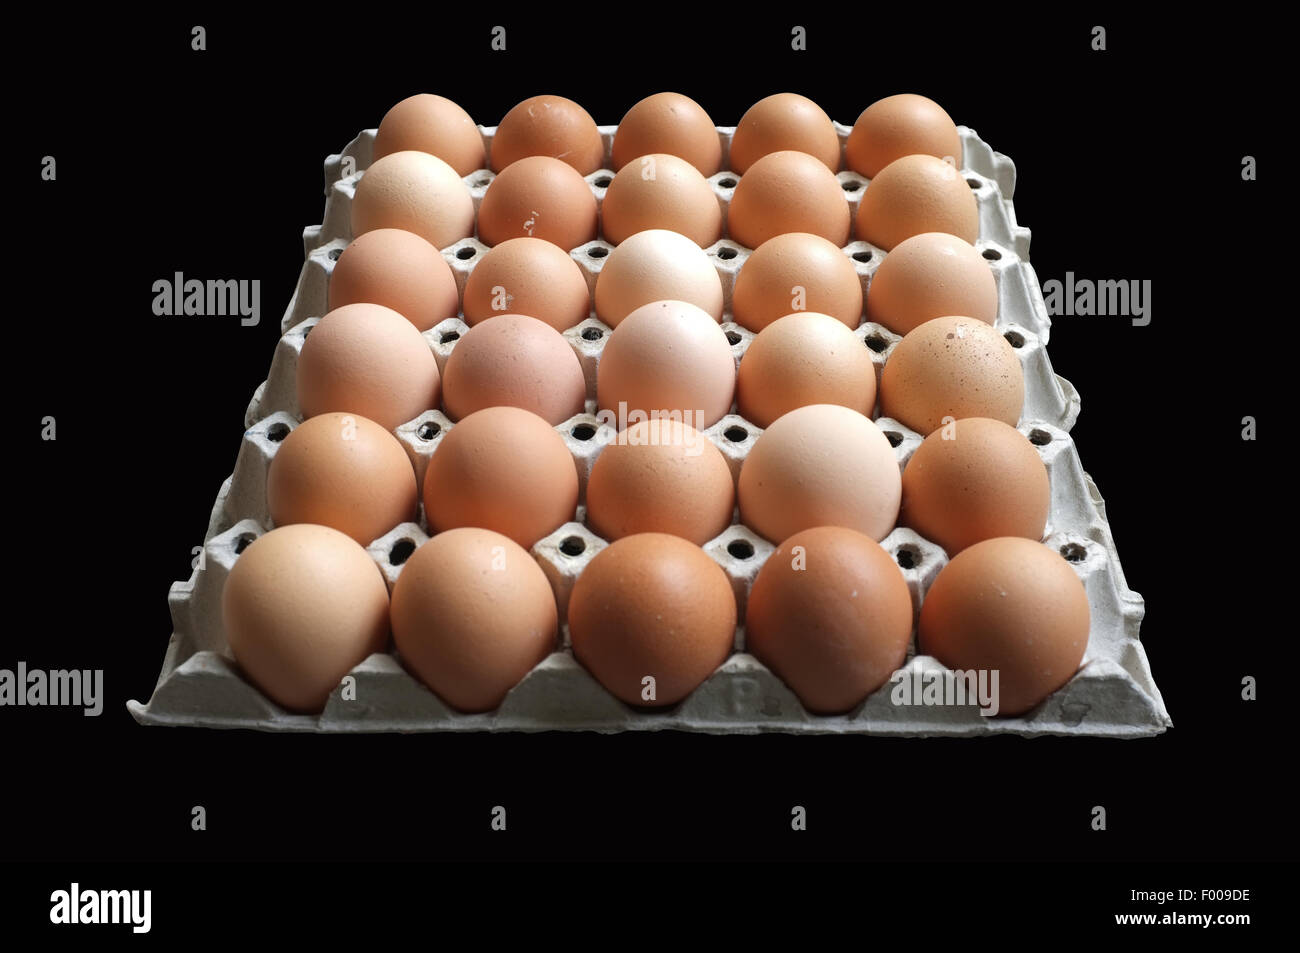 Carton of fresh brown eggs Stock Photo